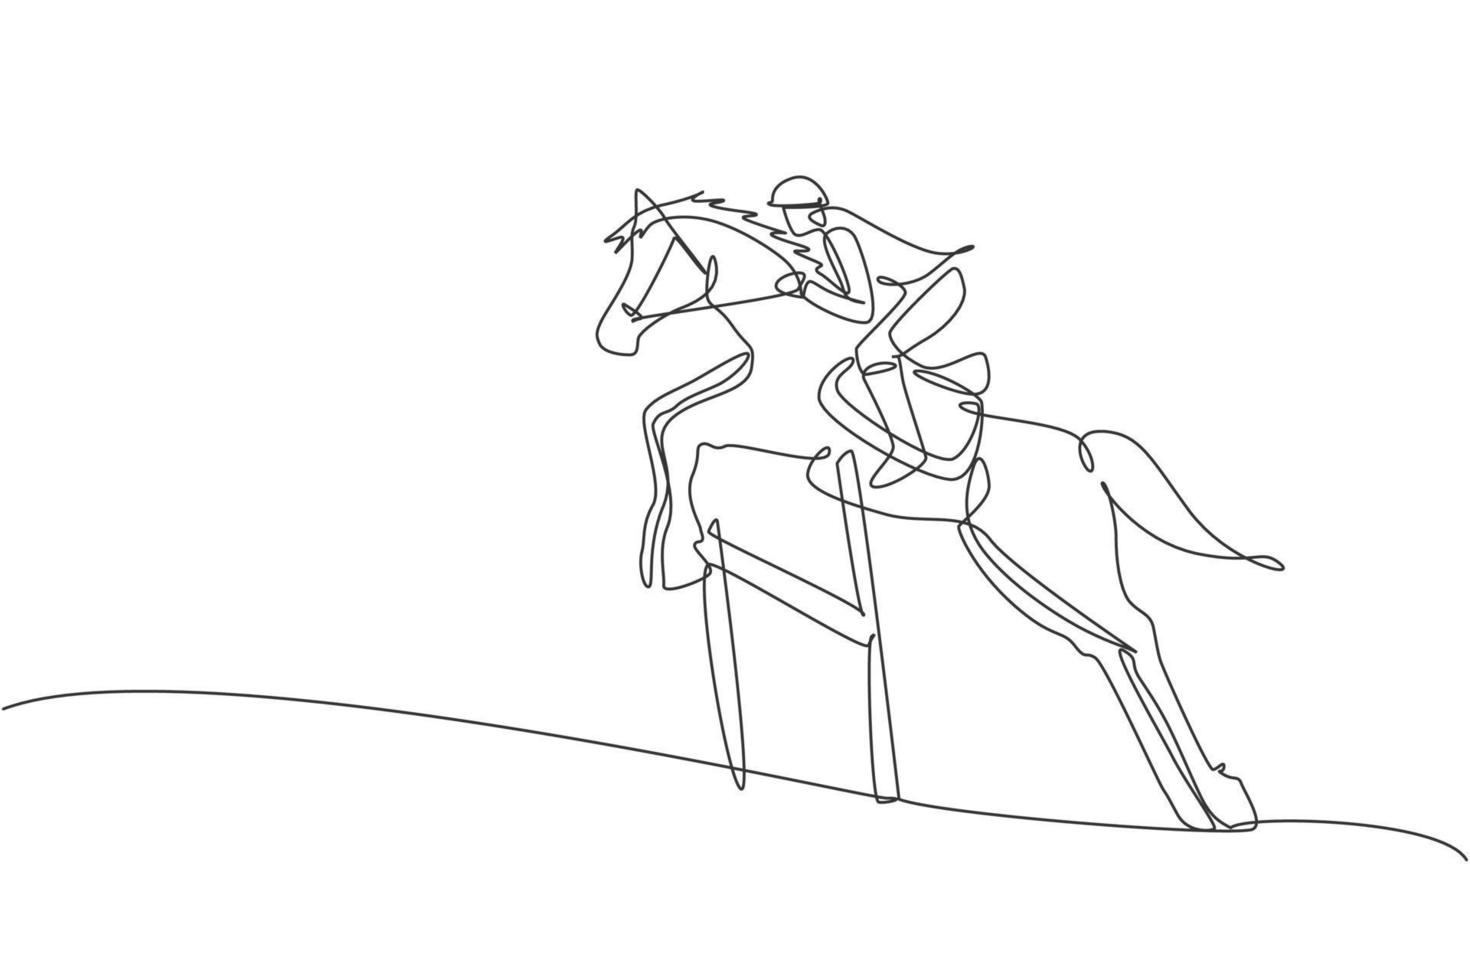 dibujo de una sola línea continua de un joven jinete profesional saltando con un caballo sobre el obstáculo. concepto de proceso de entrenamiento deportivo ecuestre. ilustración de vector de diseño de dibujo de una línea de moda